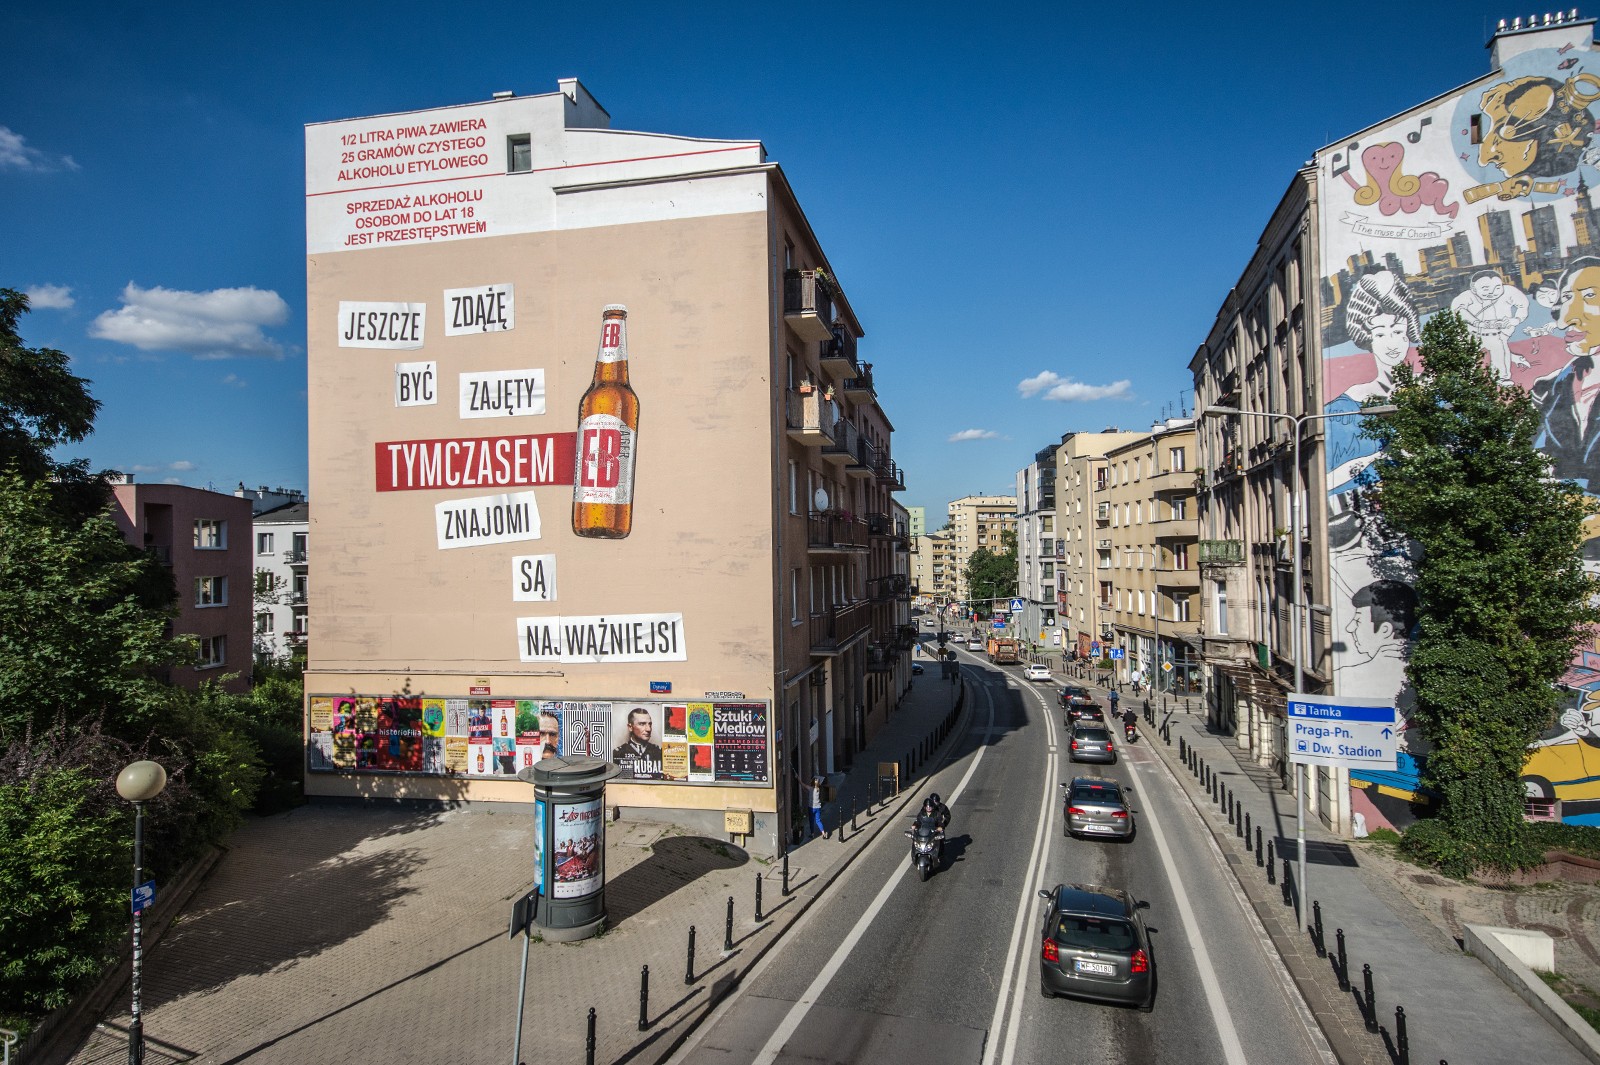 Mural reklamowy na zlecenie EB w Warszawie na ulicy Tamka | Tymczasem EB | Portfolio